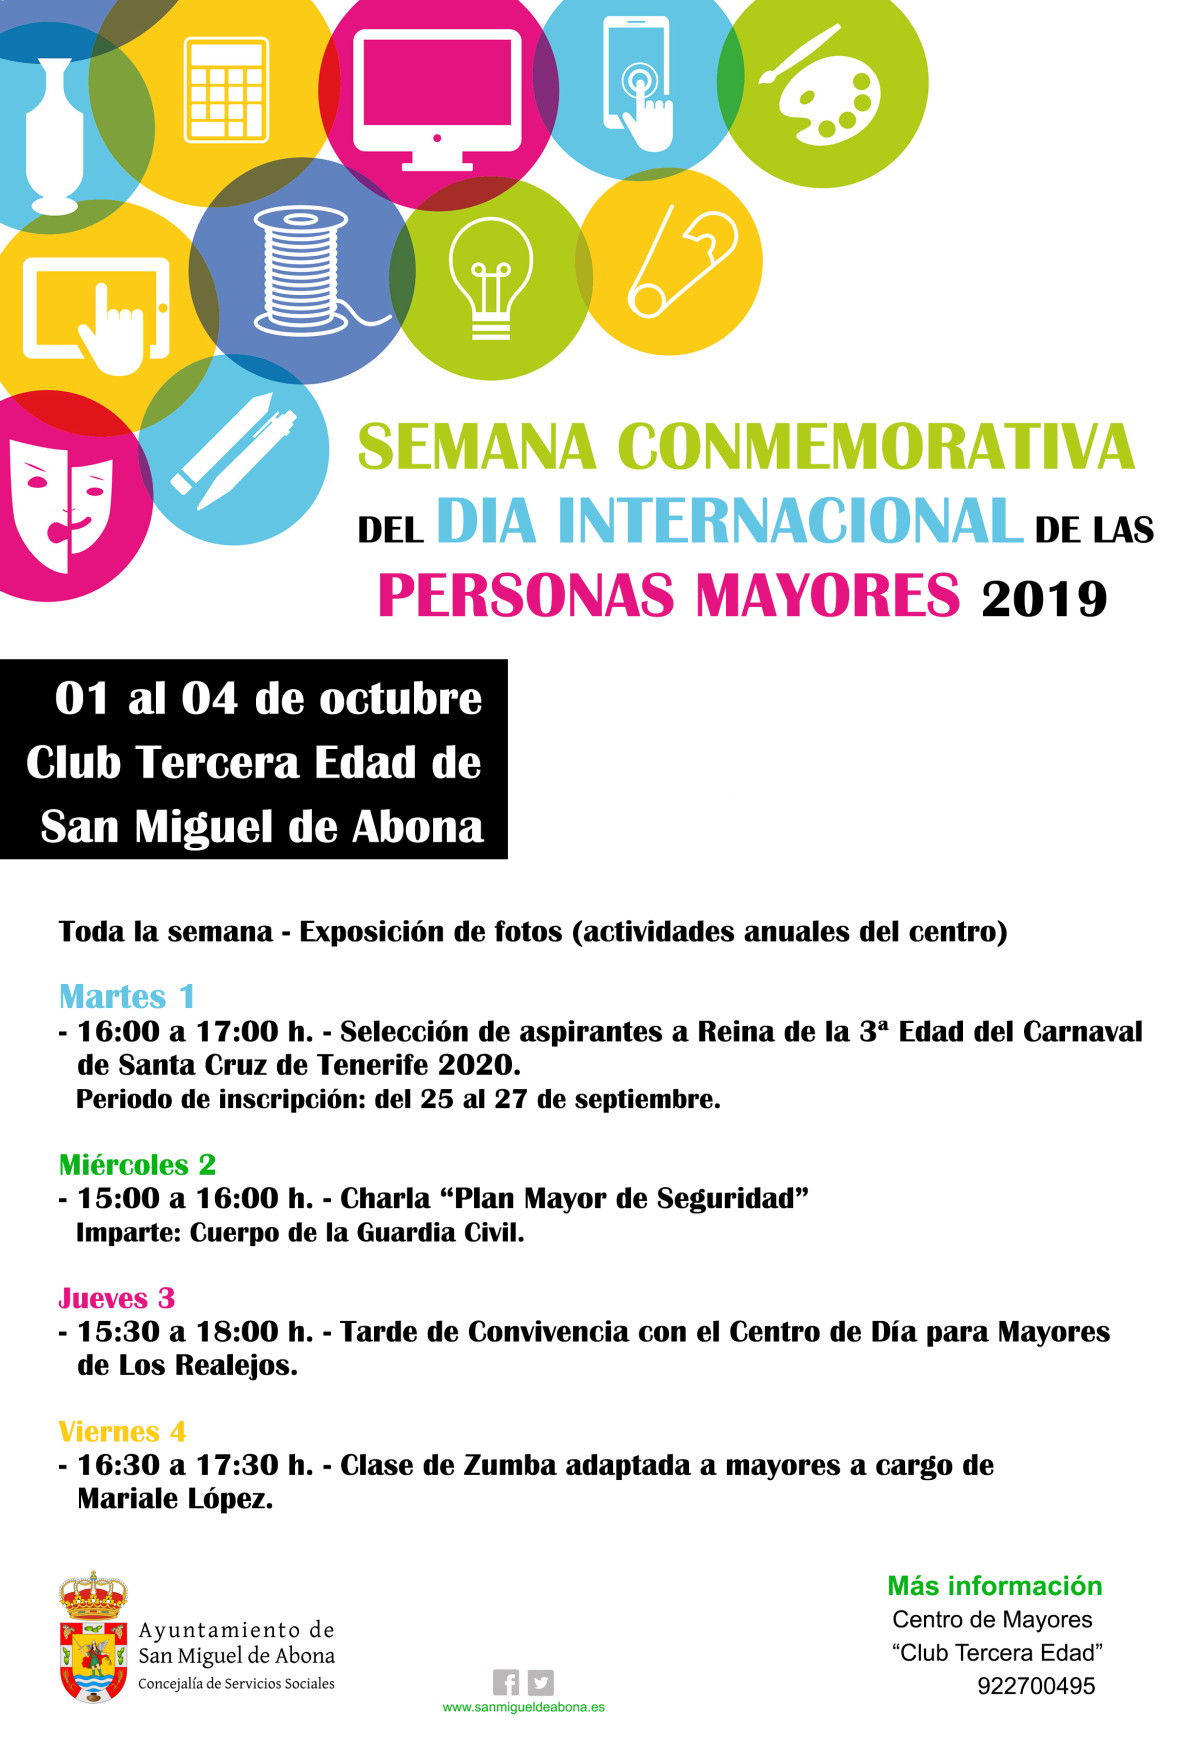 Semana conmemorativa del Día Internacional de las Personas Mayores 2019 en San Miguel